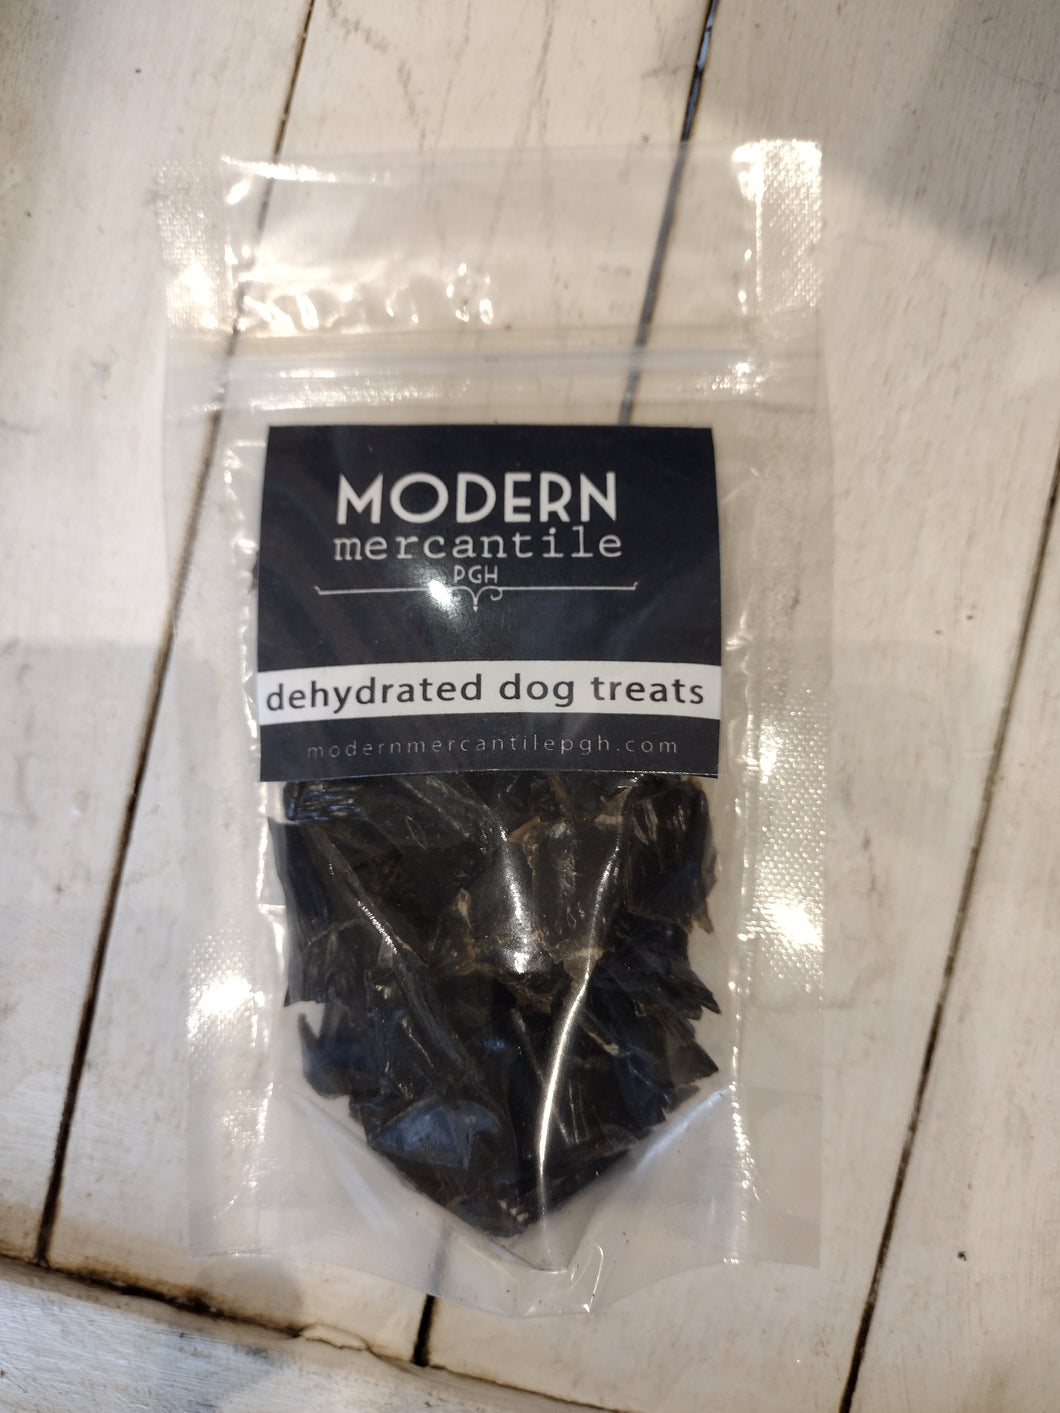 Dehydrated pet treats